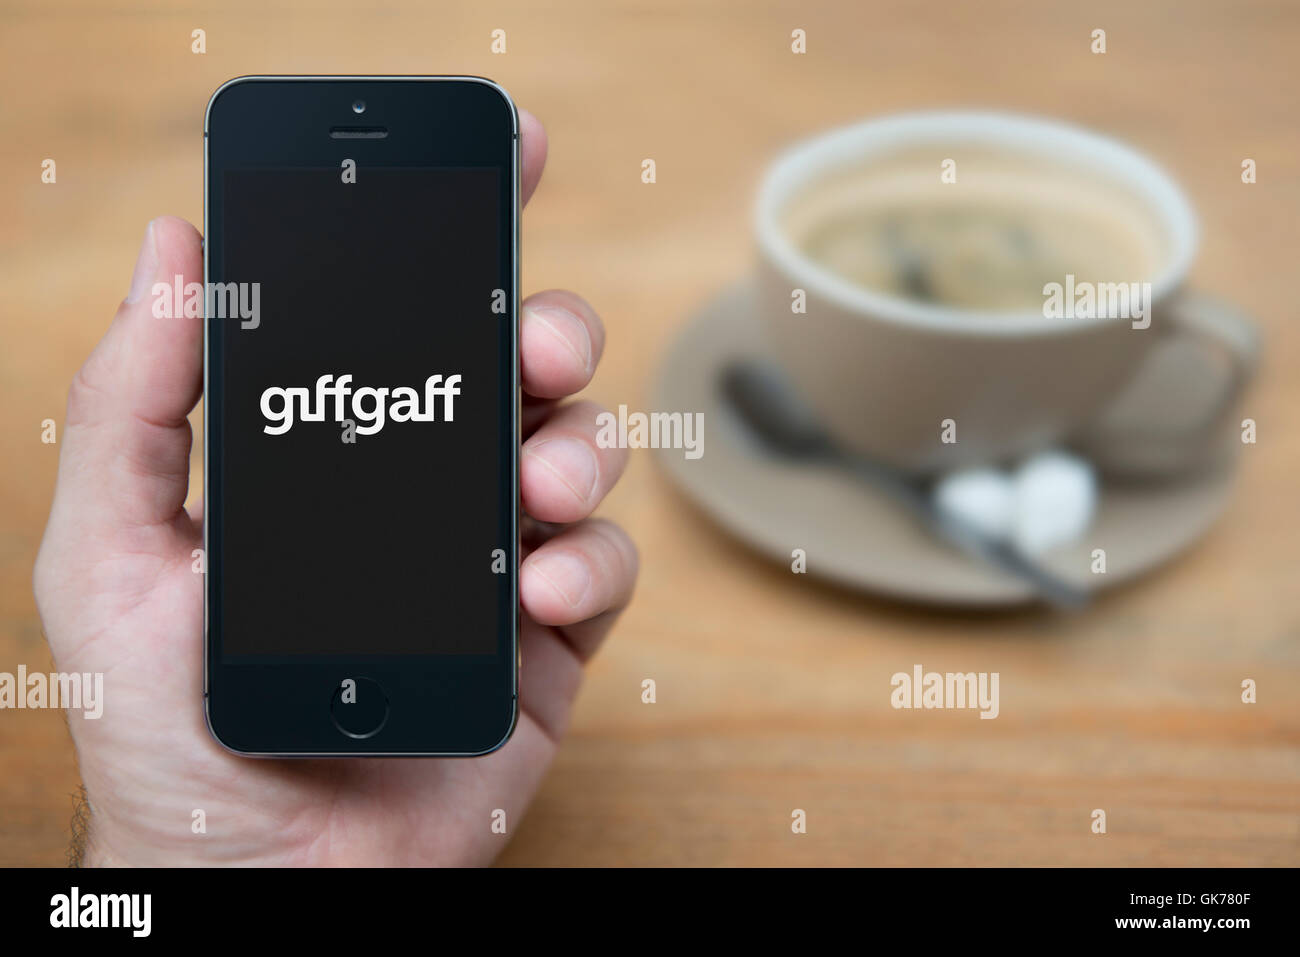 Un homme se penche sur son iPhone qui affiche le Giff Gaff logo Mobile, en restant assis avec une tasse de café (usage éditorial uniquement). Banque D'Images